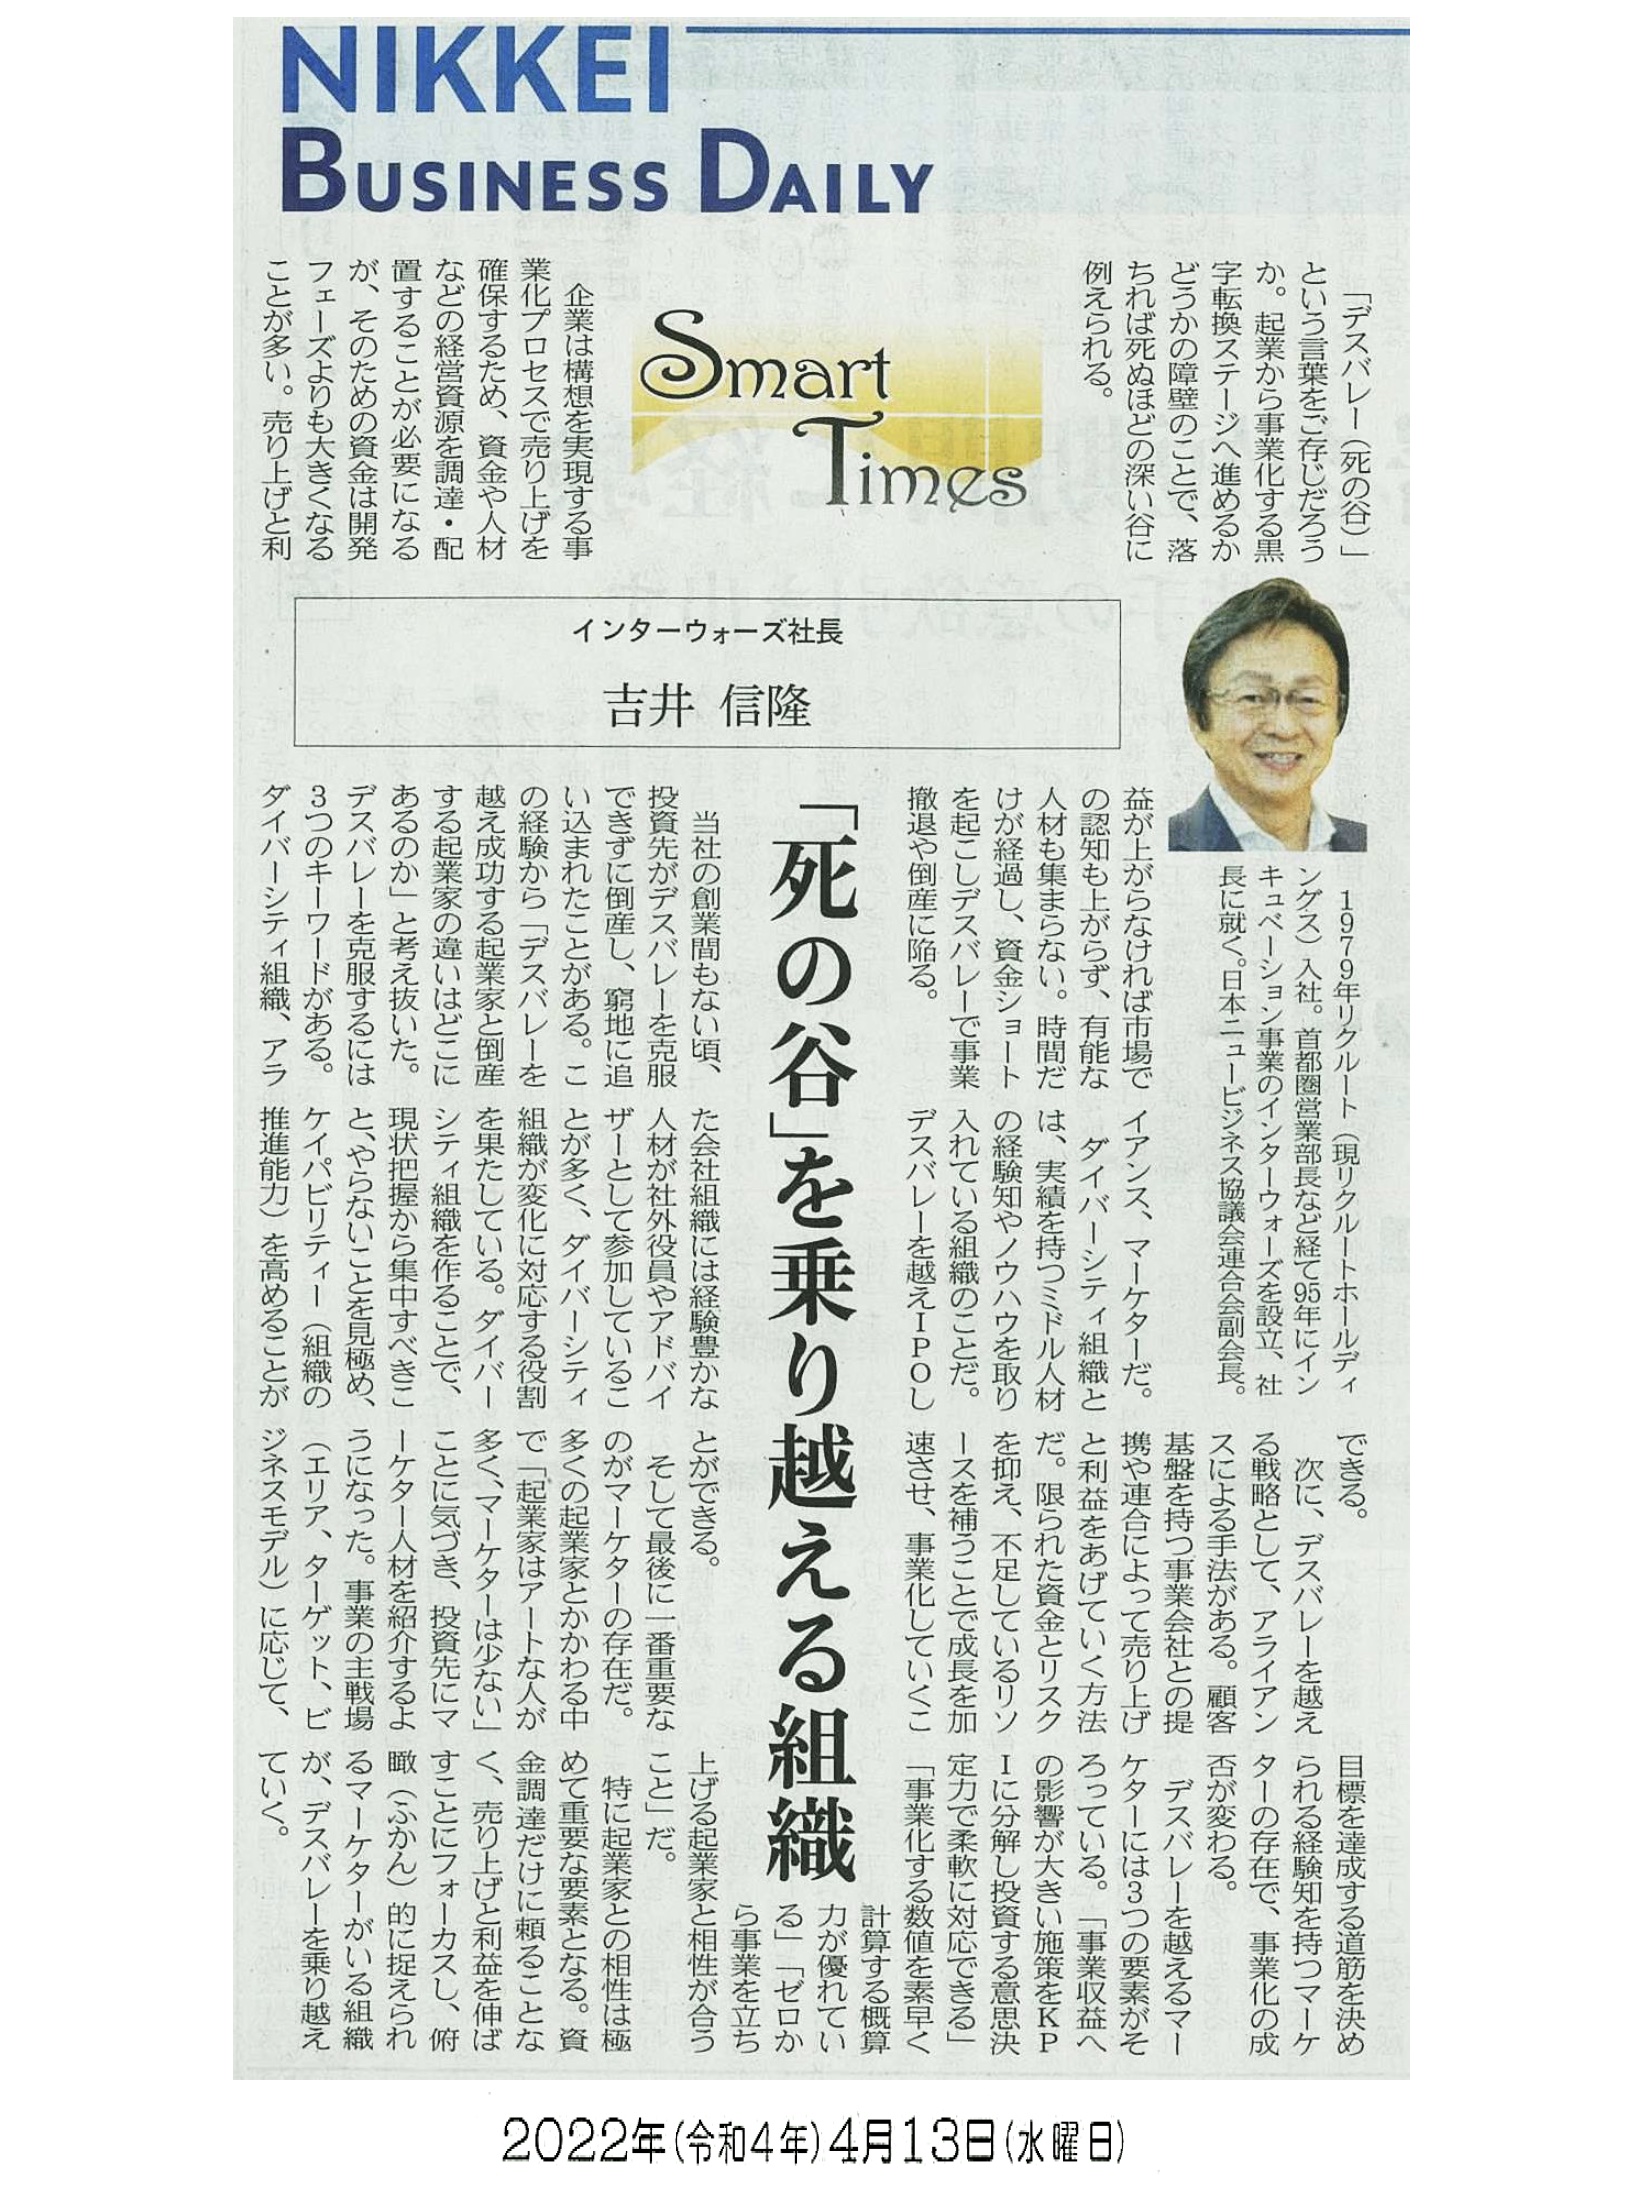 日経産業新聞 Smart Times「死の谷を乗り越える組織」